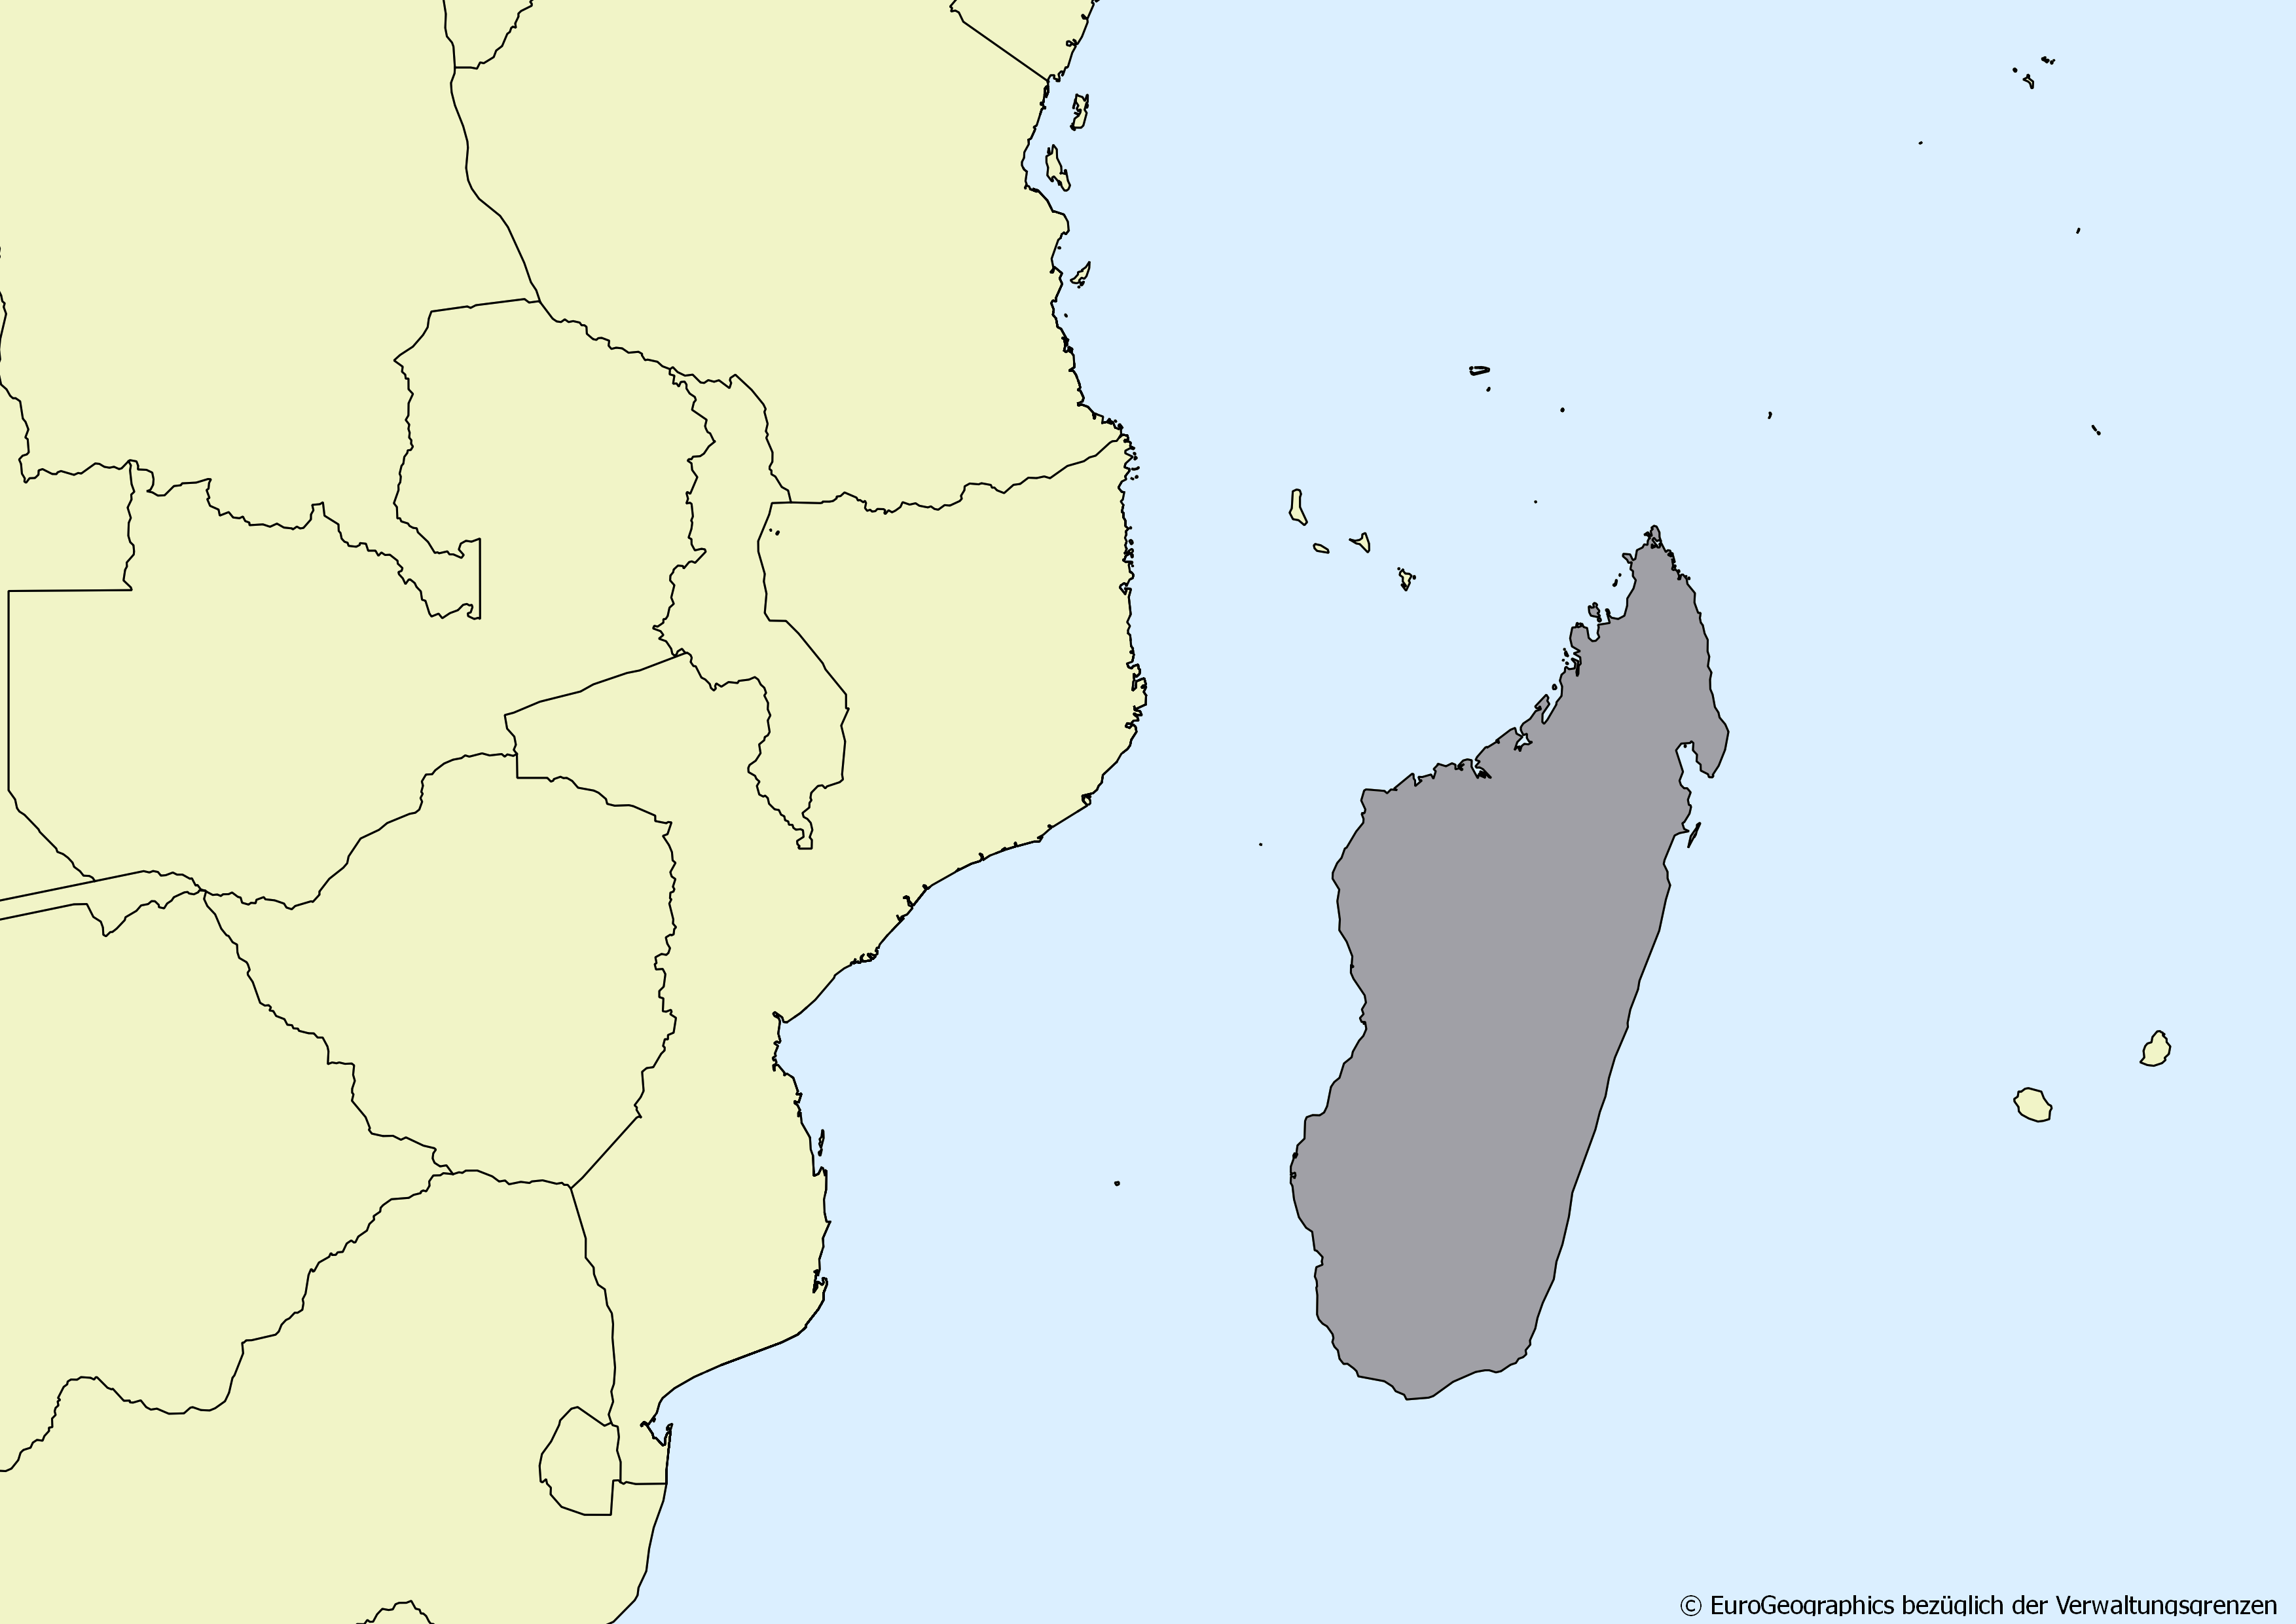 Ausschnitt einer Karte des afrikanischen Kontinents mit Ländergrenzen. Im Zentrum steht Madagaskar grau hervorgehoben